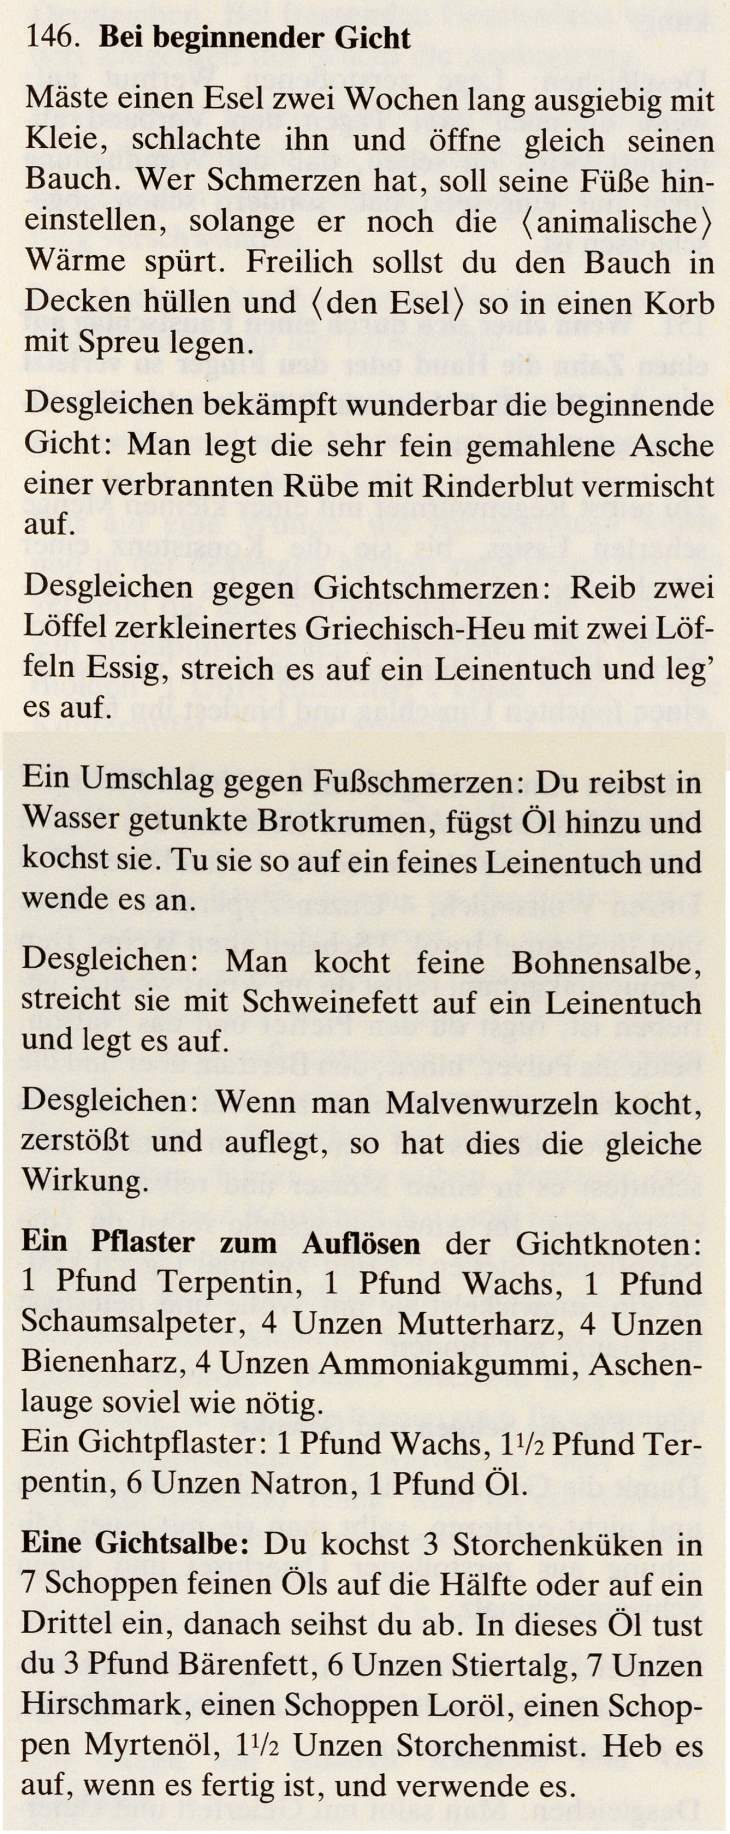 Das Lorscher Arzneibuch der Staatsbibliothek Bamberg Rezepte gegen Gicht Quelle: mit freundlicher Genehmigung der Staatsbibliothek Bamberg